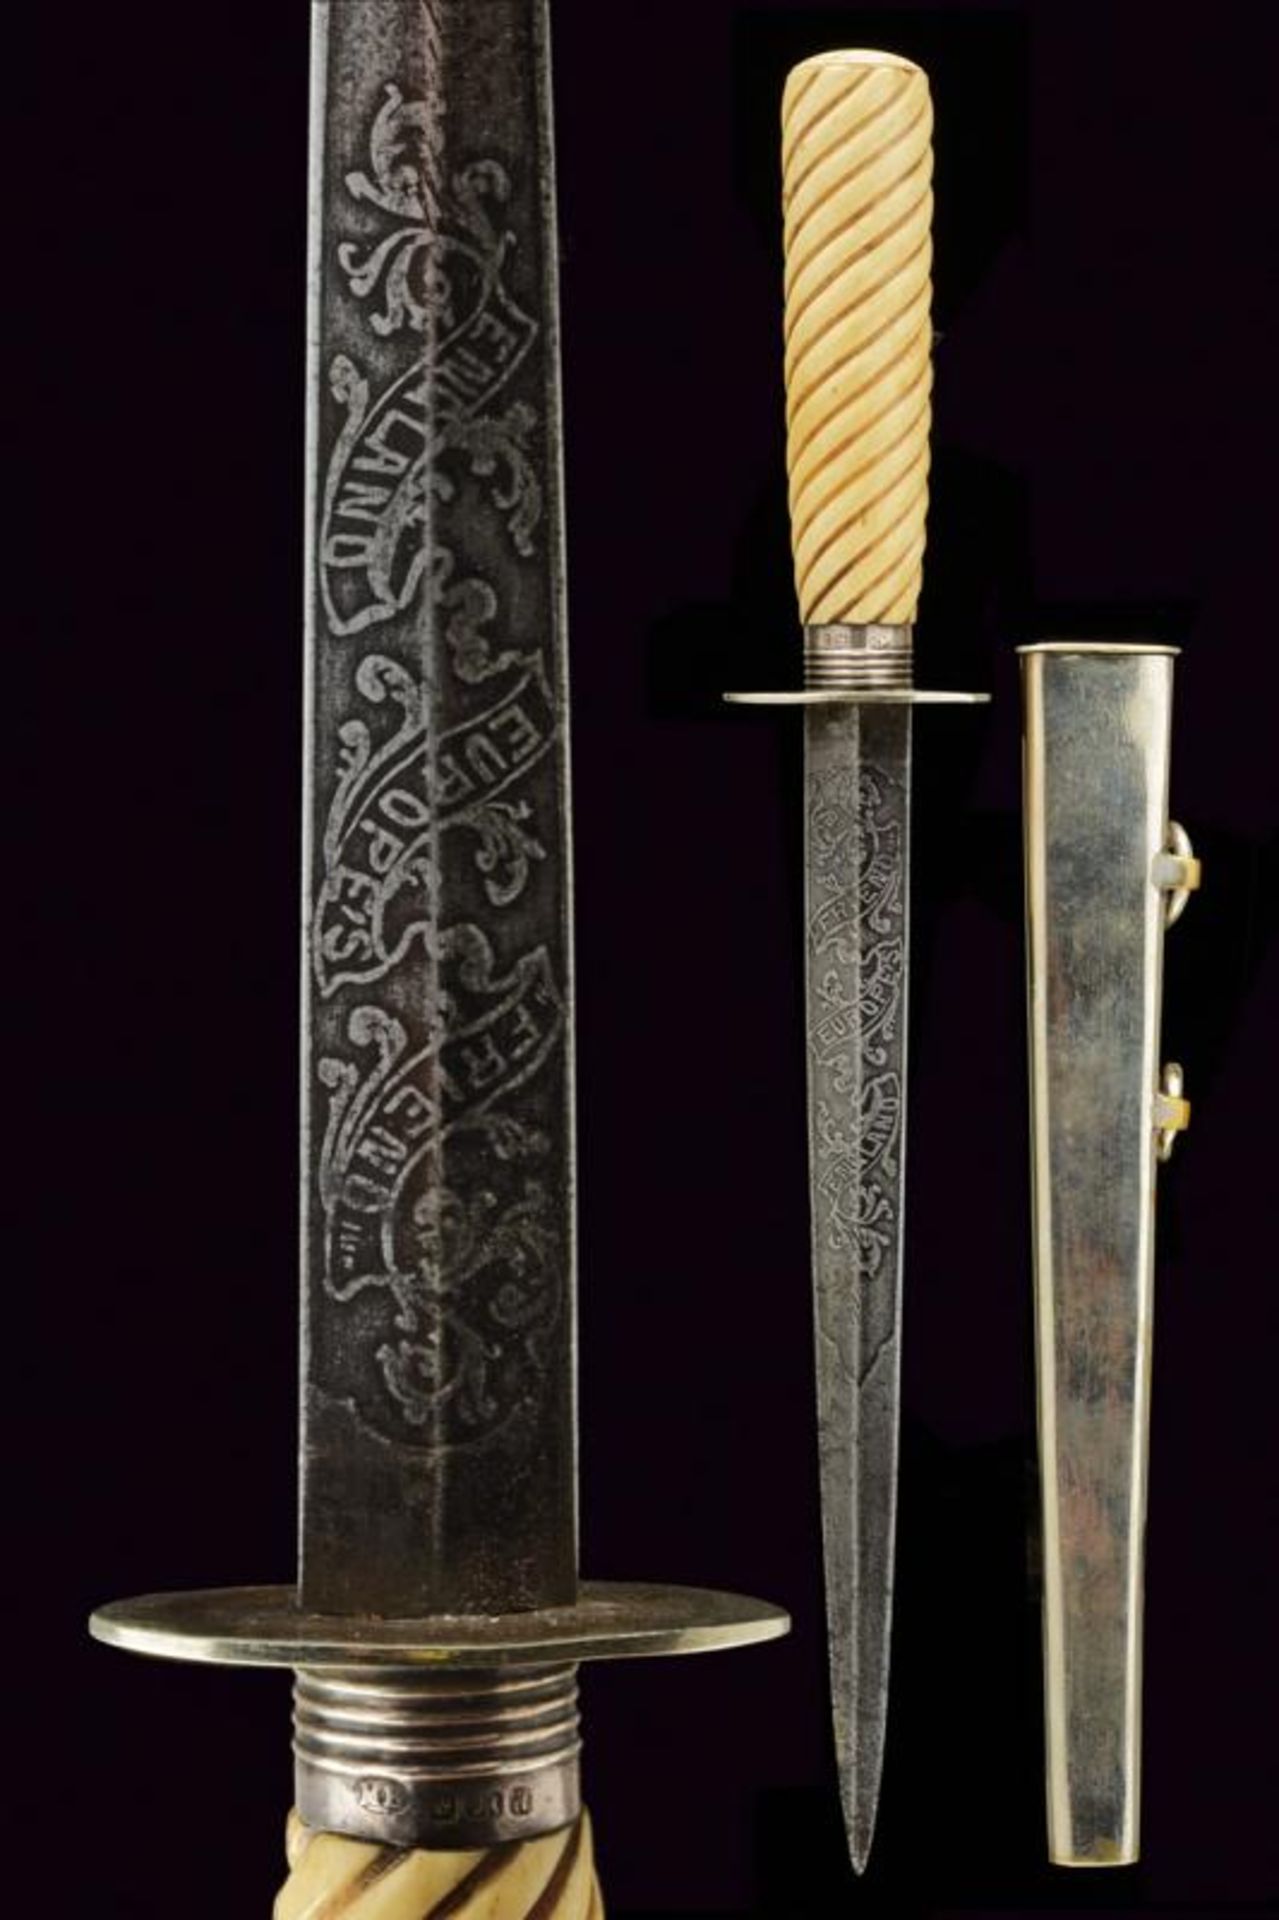 A commemorative dagger